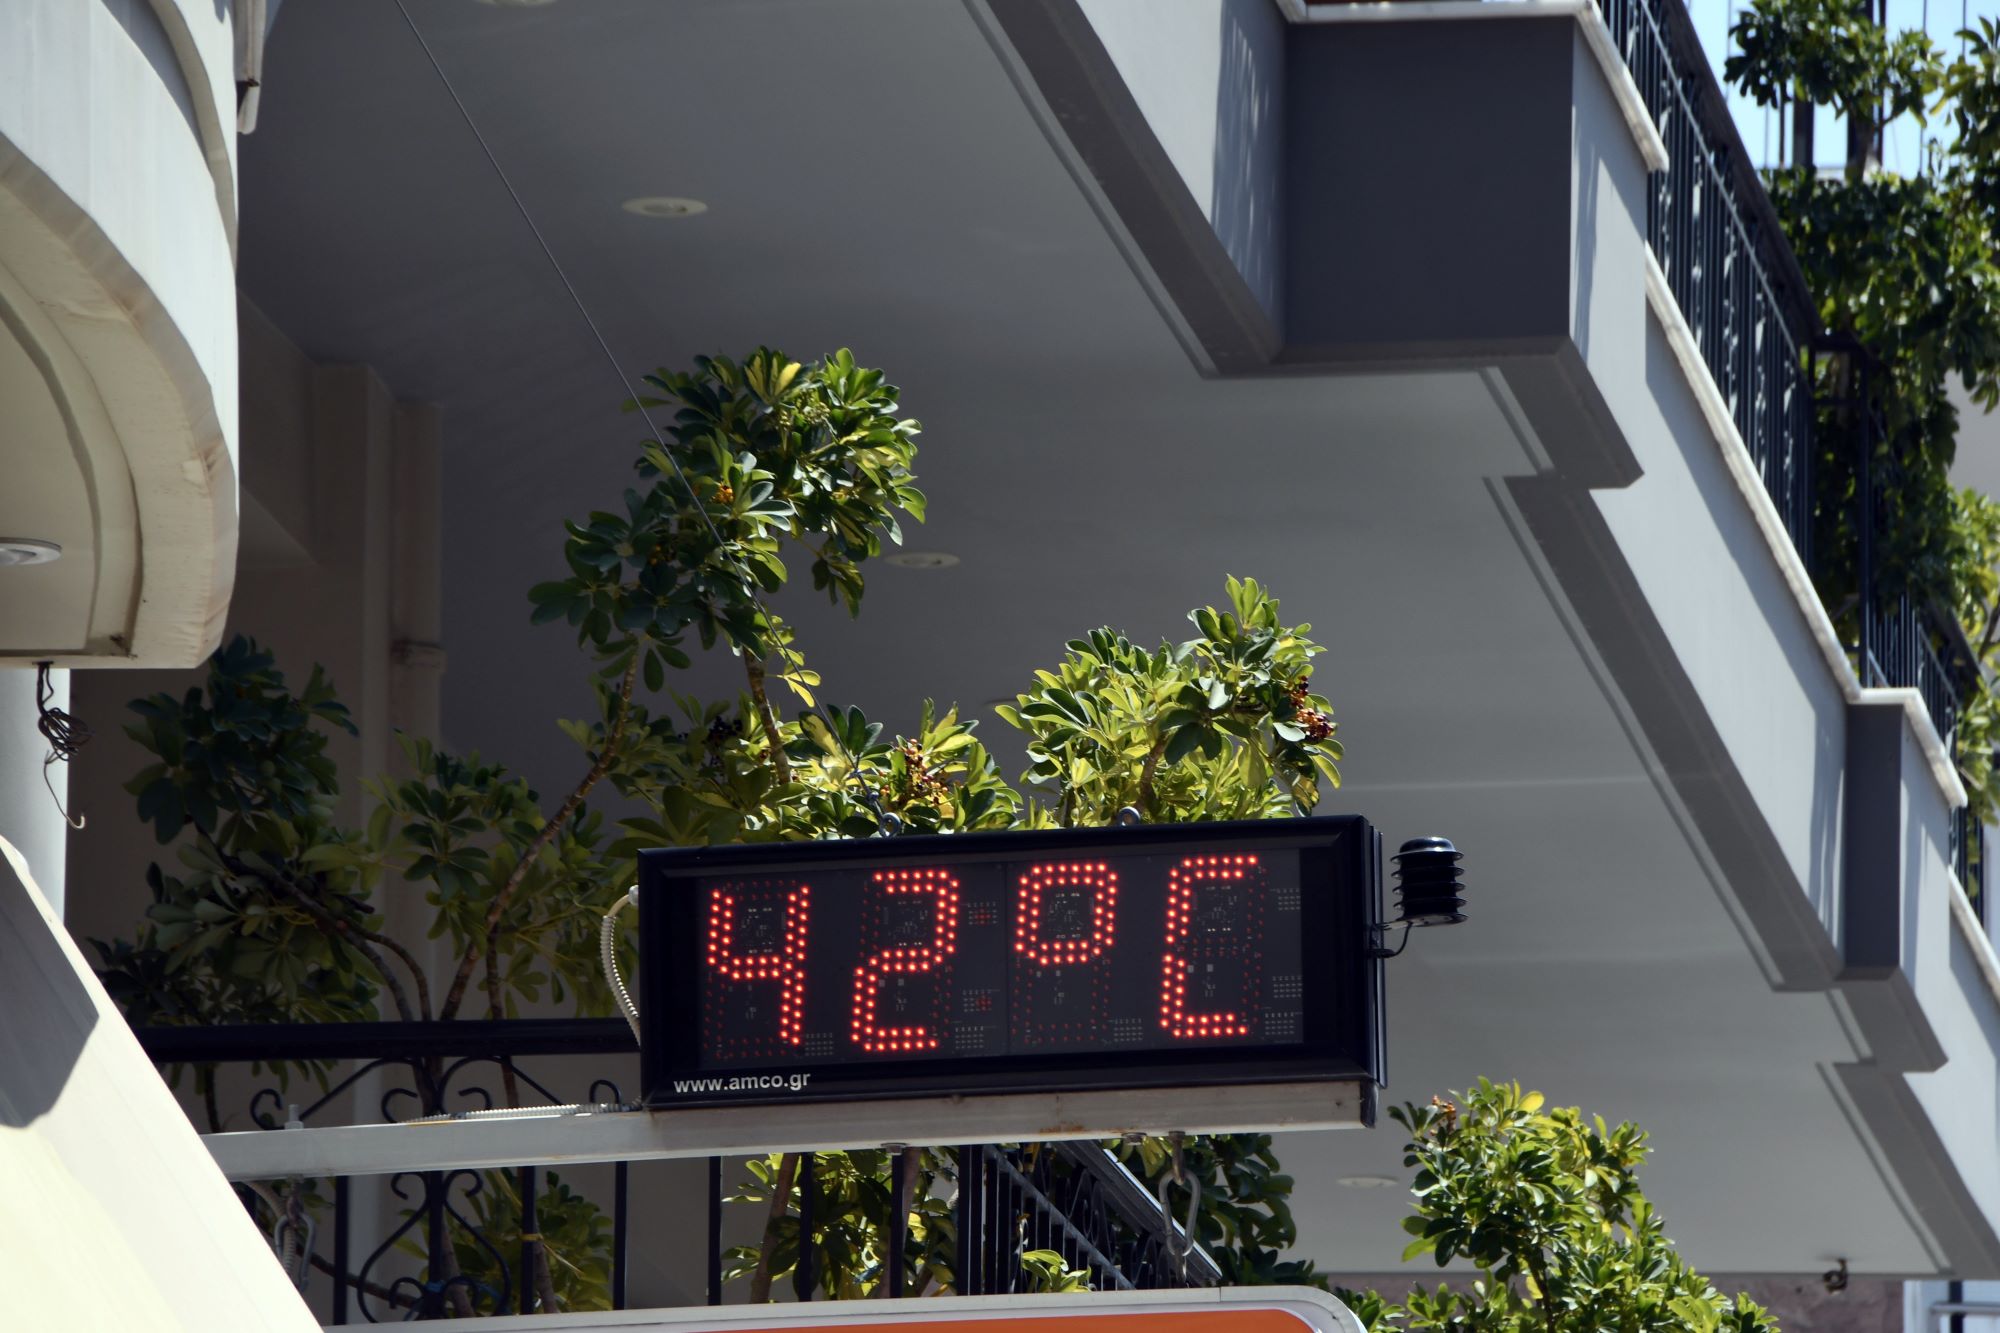 Ο πιο ζεστός Ιούλιος για την Κρήτη: Με 2.8 βαθμούς υψηλότερη θερμοκρασία της τελευταίας δεκαετίας